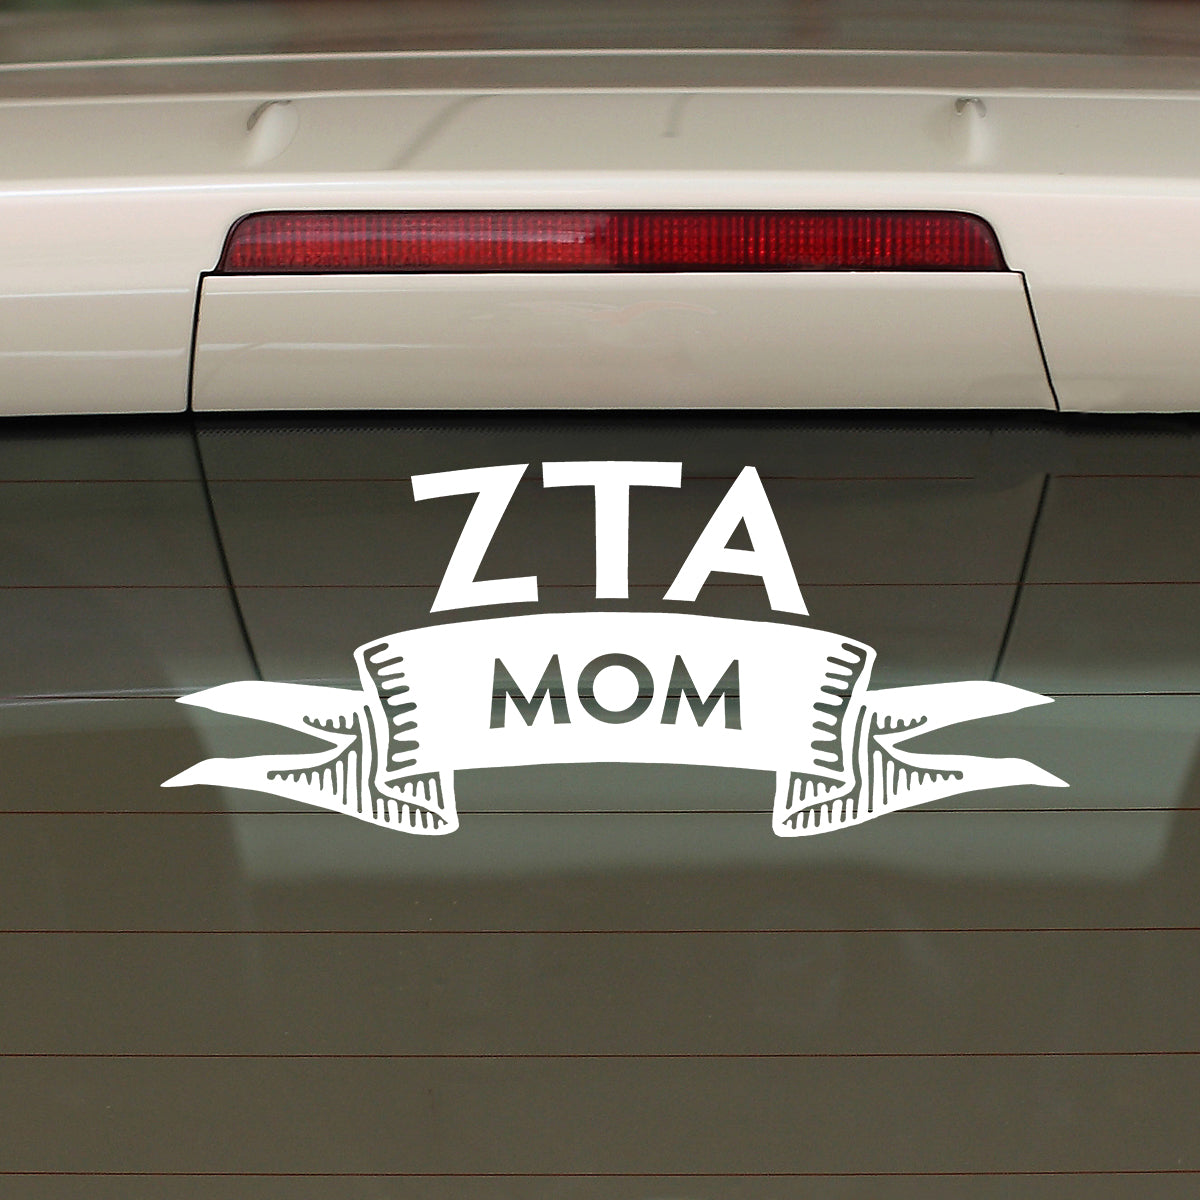 Zeta Tau Alpha Mom Gift Pack | Brit and Bee